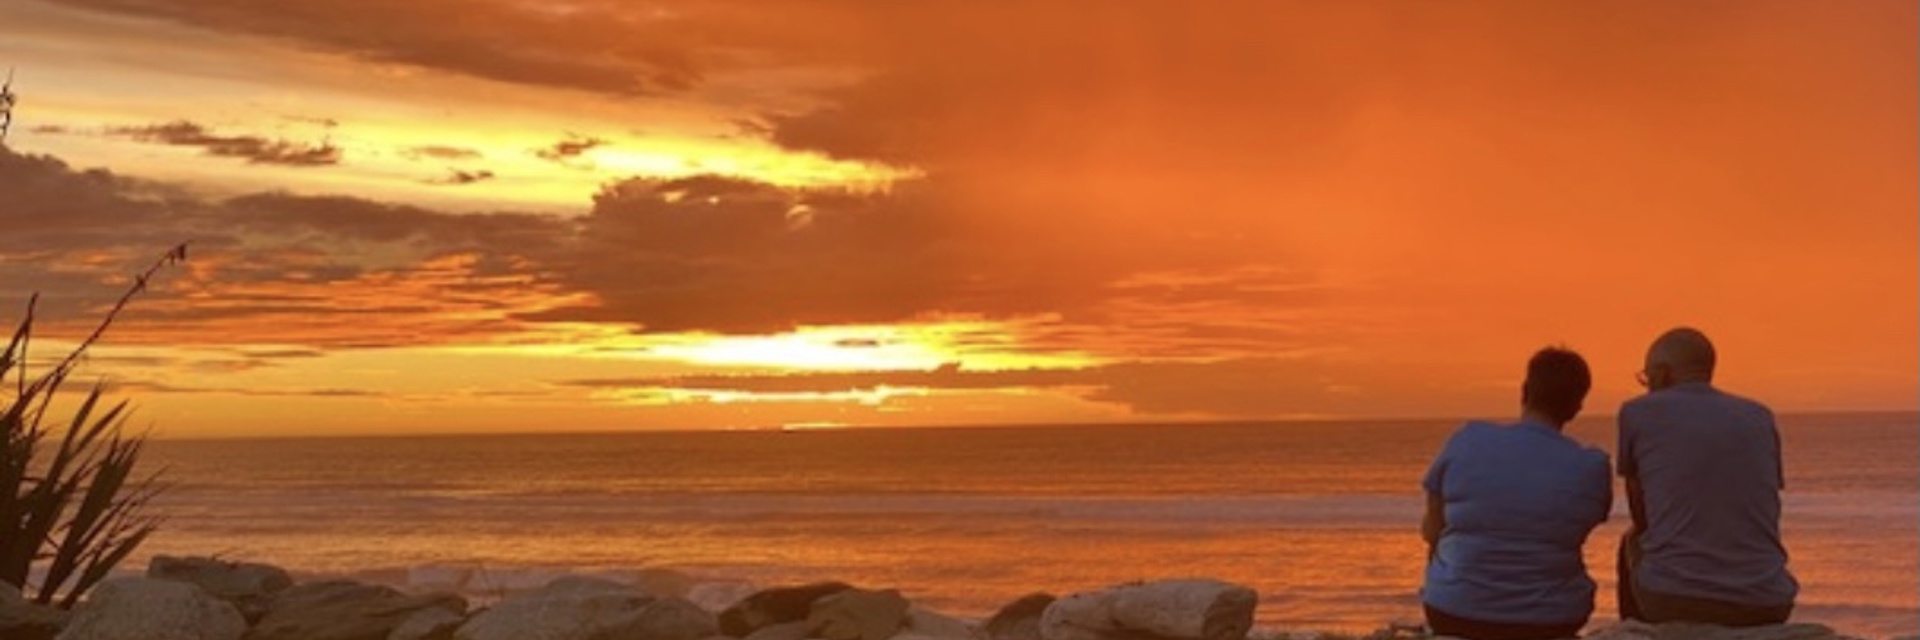 Ross Beach sunset